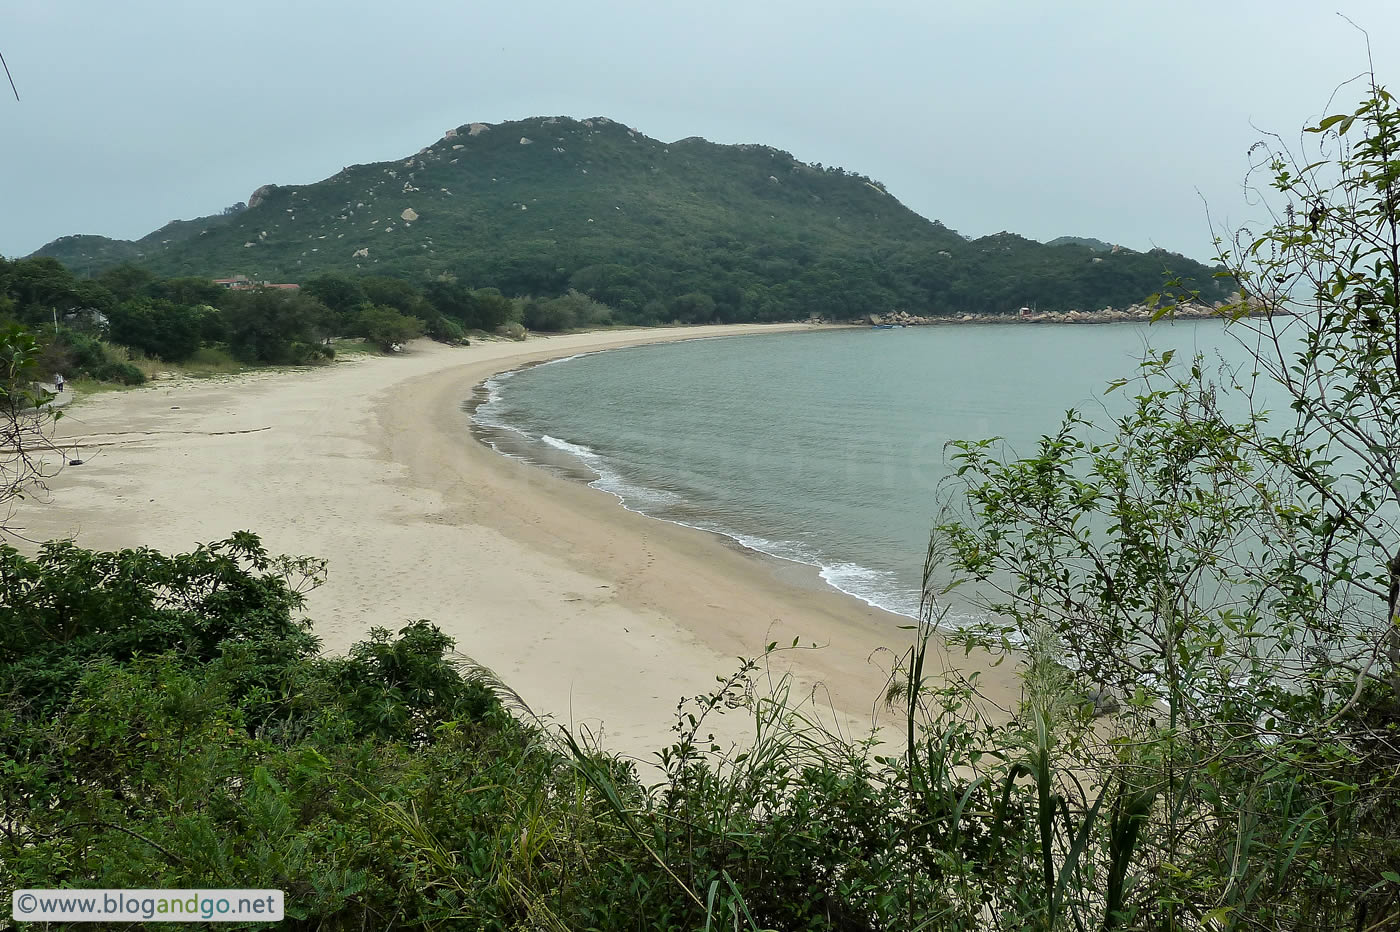 Lantau Trail 7 - Beach at Fan Lau Sai bay